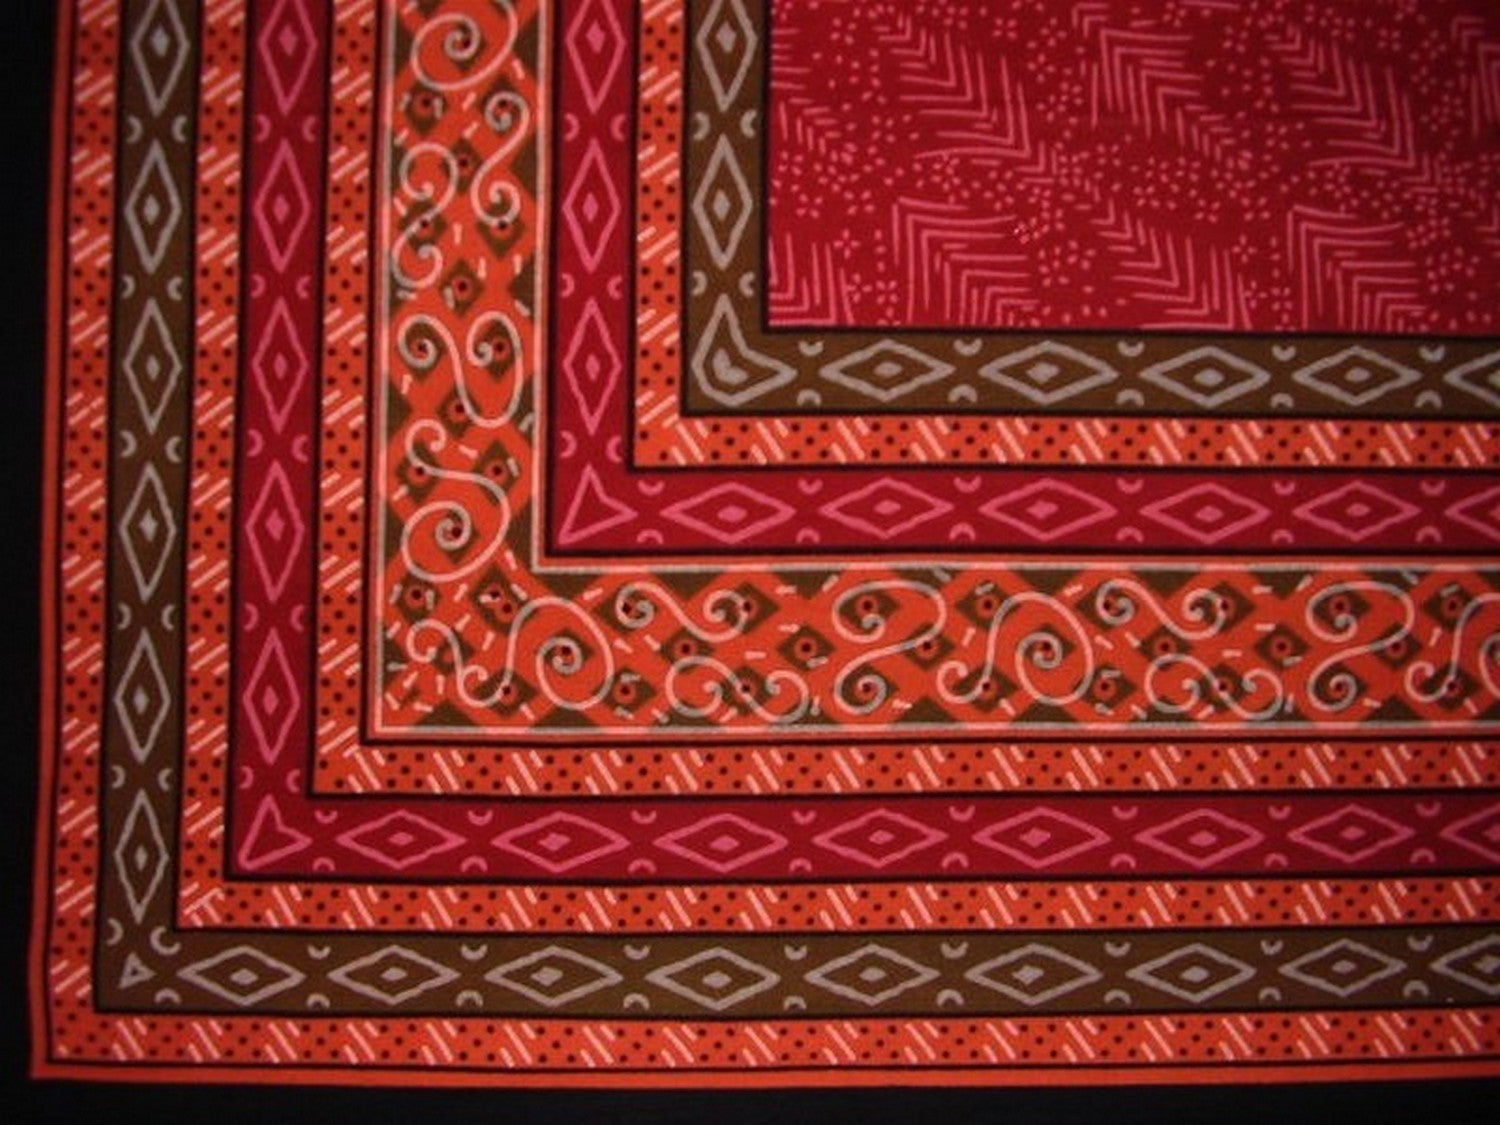 Mantel de algodón con estampado Calico, 90 x 60 pulgadas, color rojo